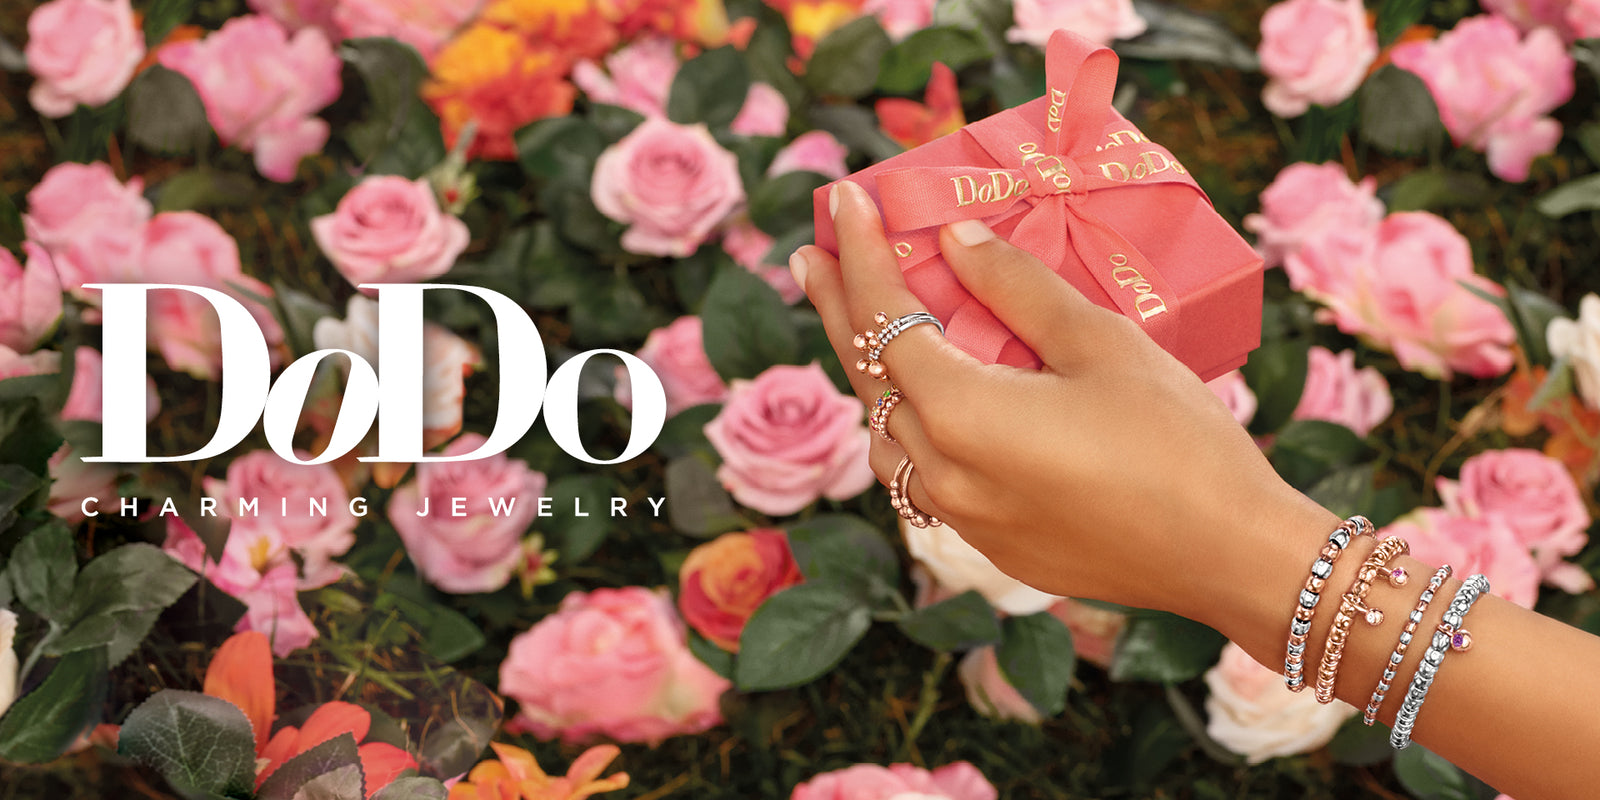 Schmuck von DoDo aus Italien bei Juwelier Krebber, Spring Trends